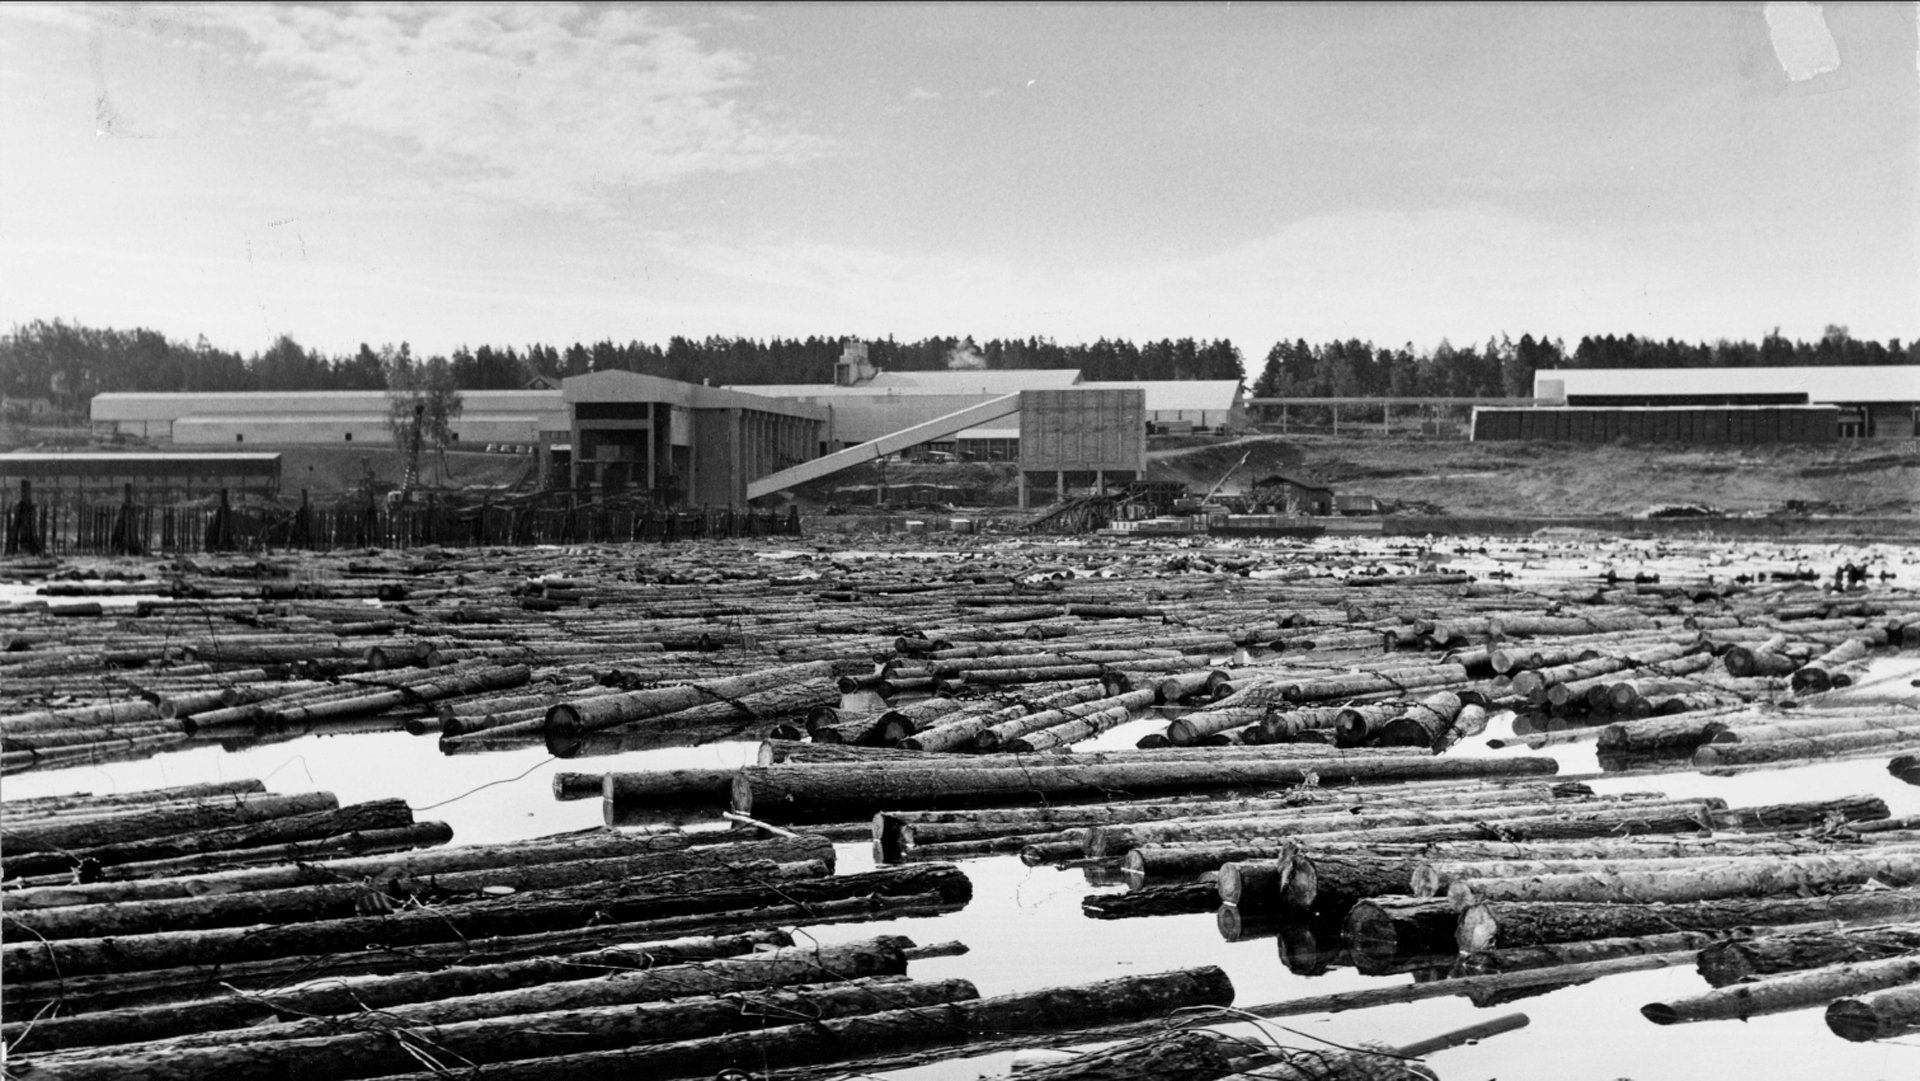 upm-kaukas-kaukas-sawmill-wood--saha-tukkivarasto-year-1960-1920x1080.jpg